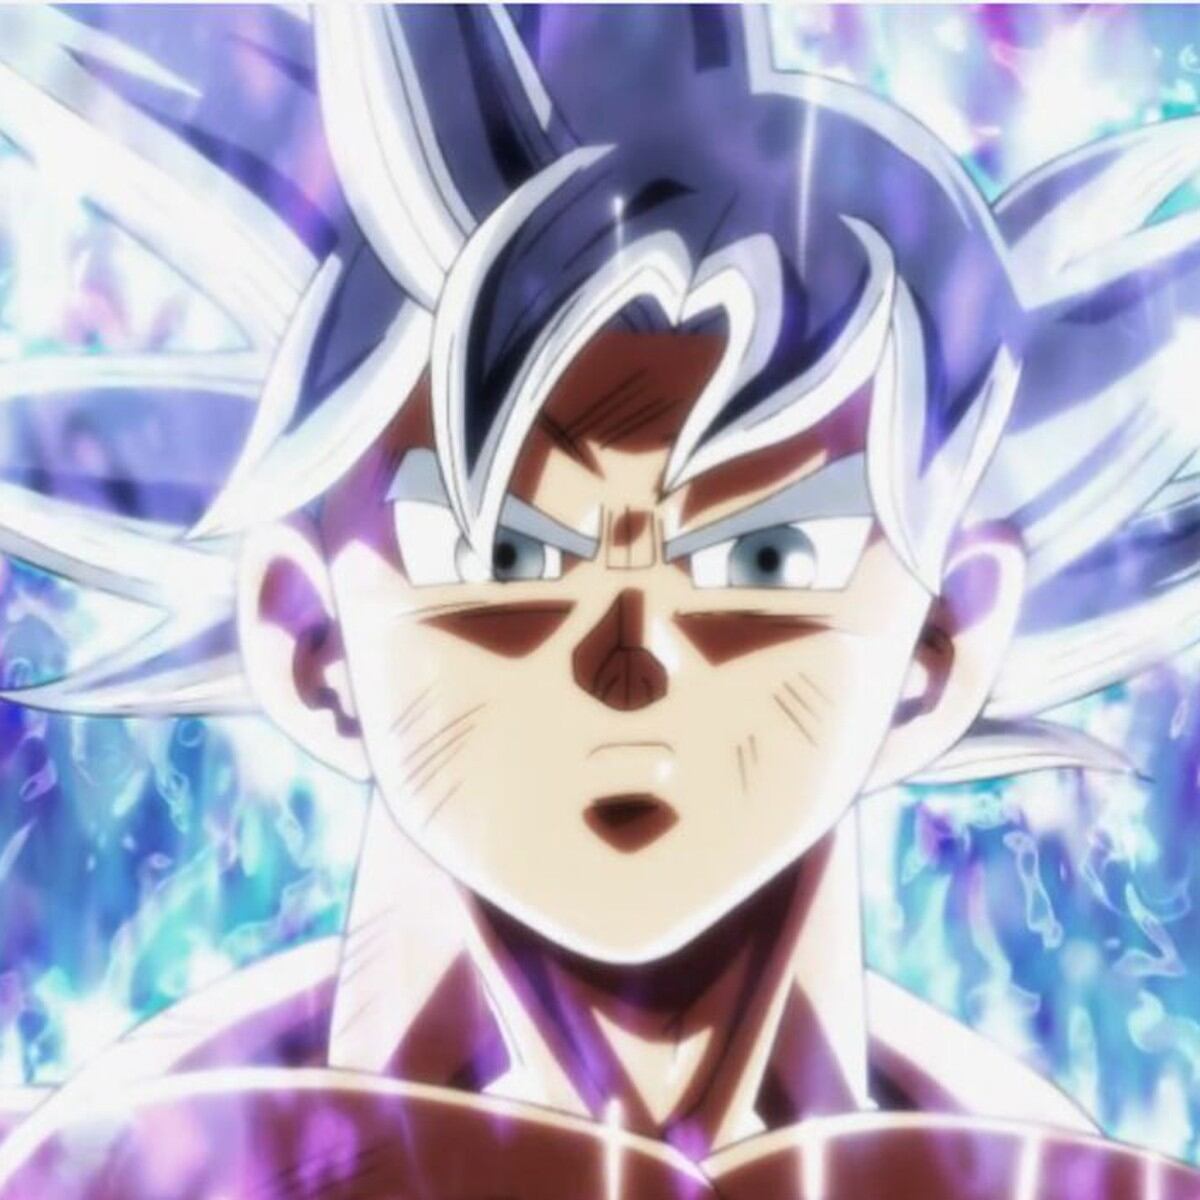 Combo Infinito - Este é o Xeno Goku, do anime de Dragon Ball